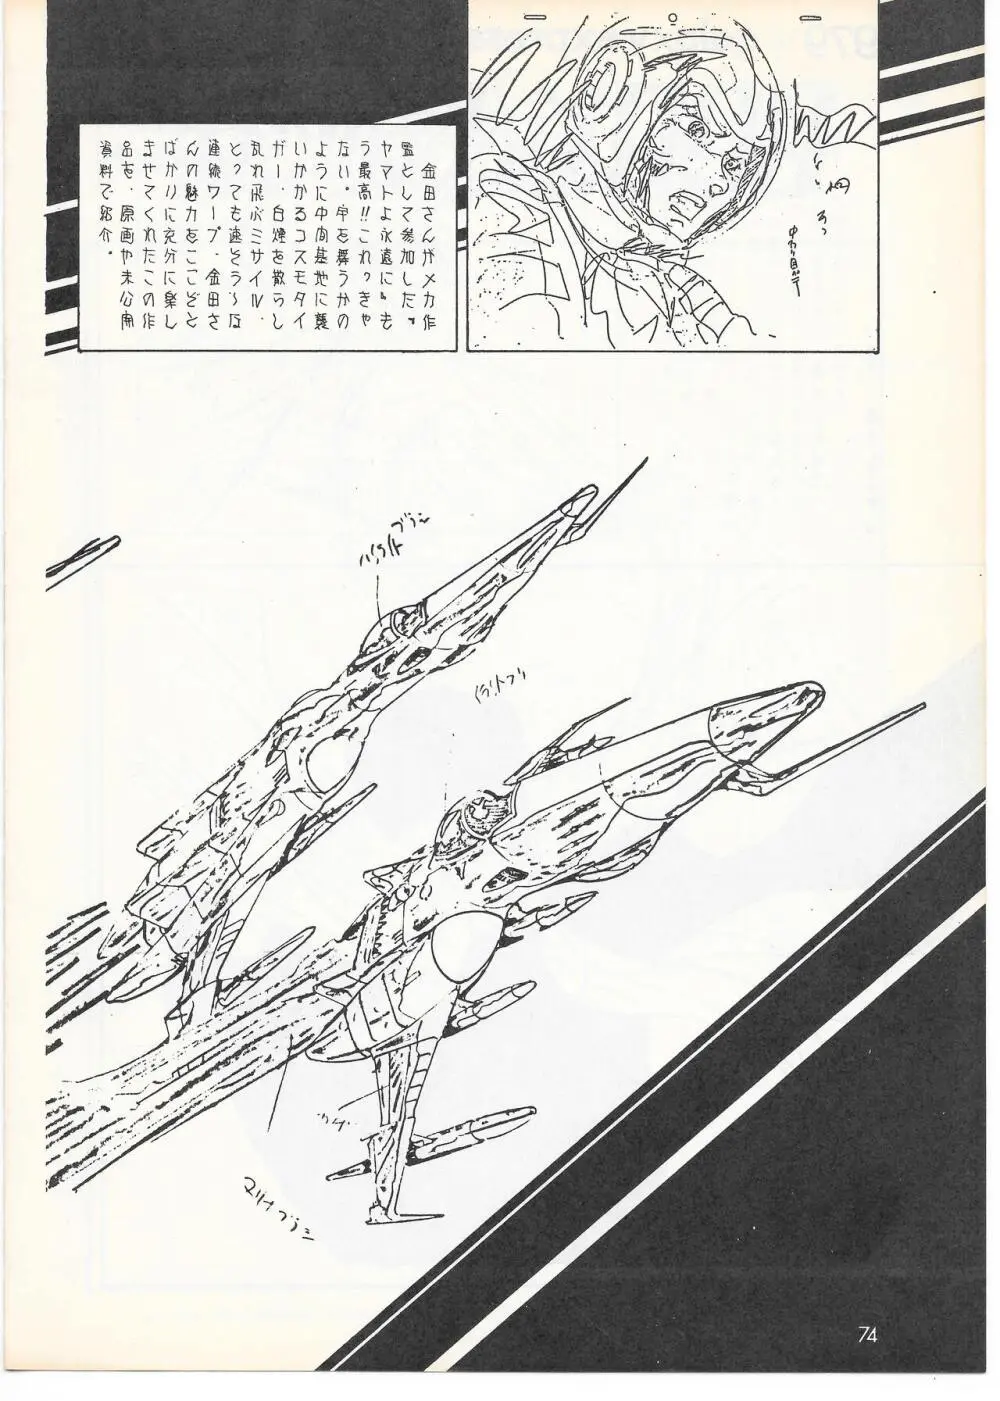 THE ANIMATOR 1 金田伊功特集号 71ページ